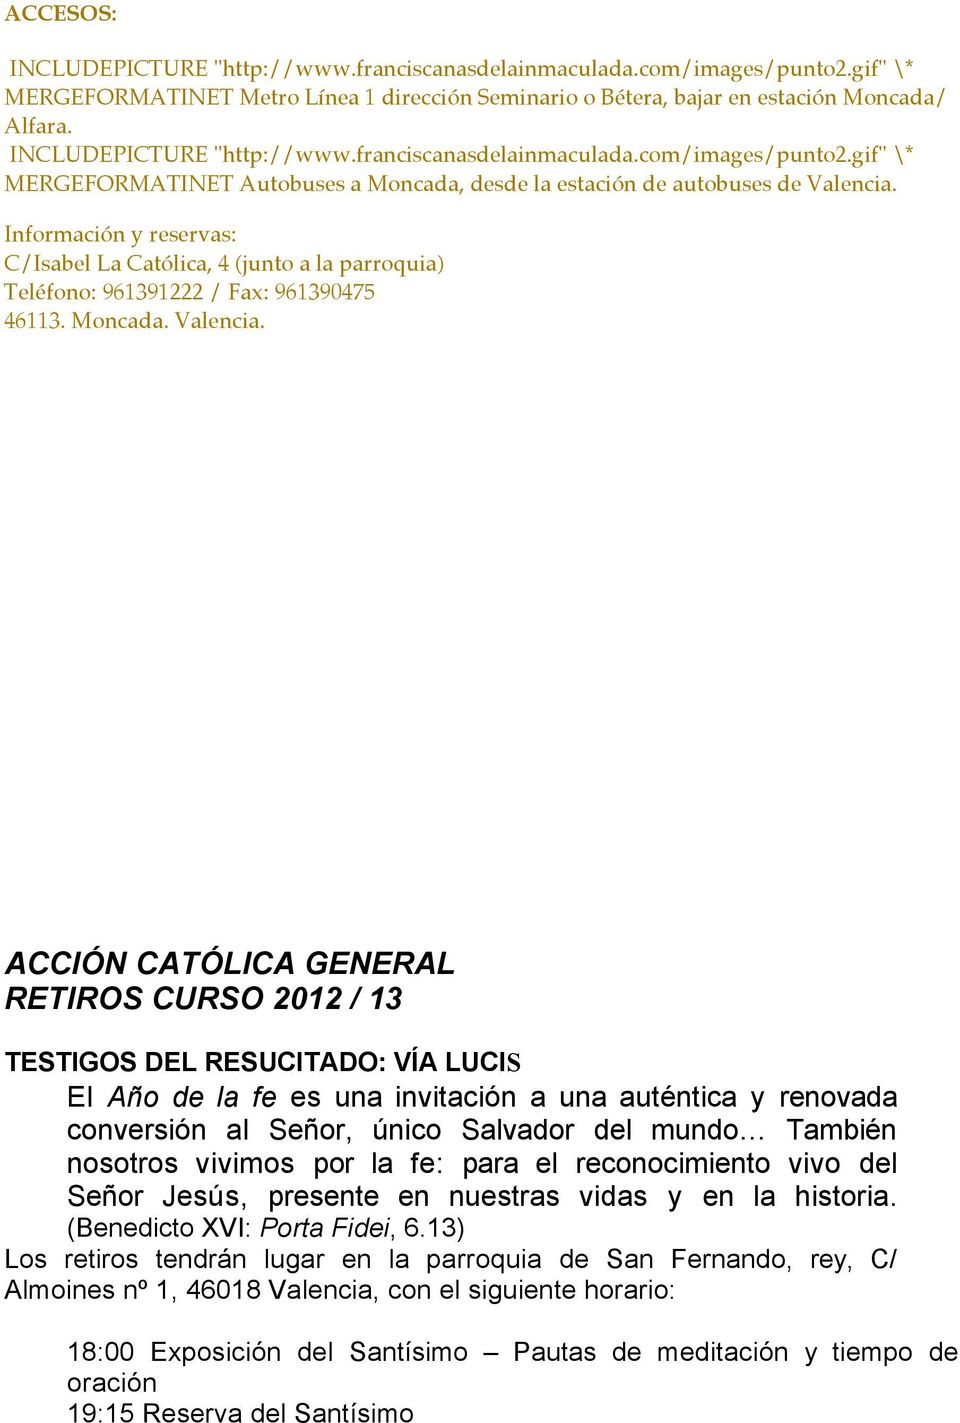 Información y reservas: C/Isabel La Católica, 4 (junto a la parroquia) Teléfono: 961391222 / Fax: 961390475 46113. Moncada. Valencia.